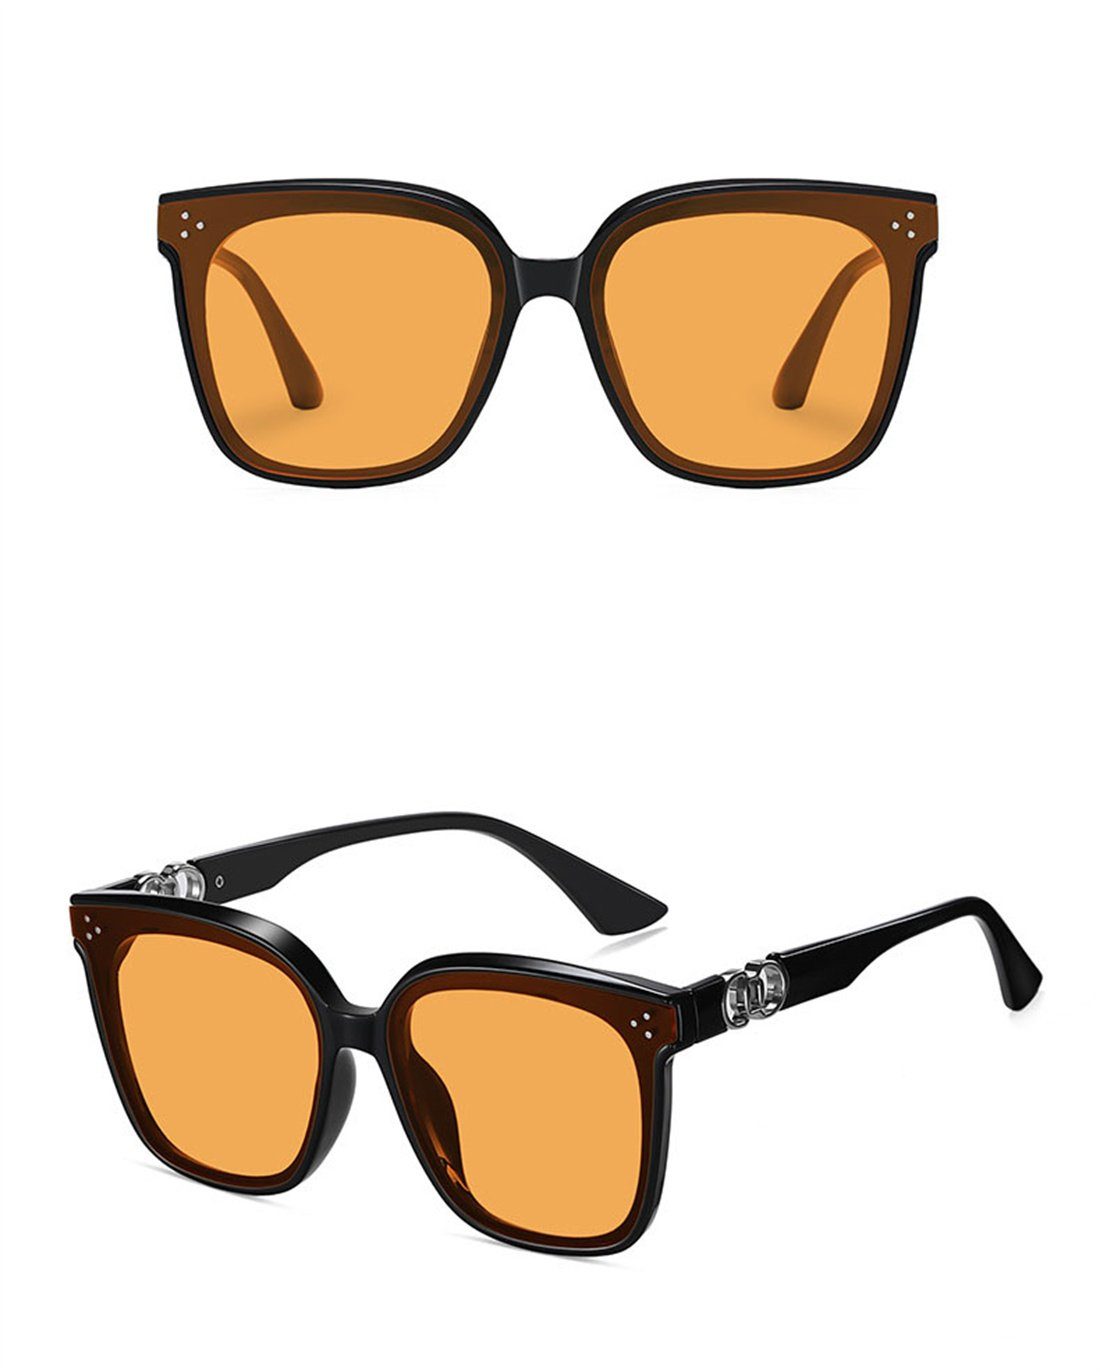 DÖRÖY Sonnenbrille für und Mode-Sonnenbrillen Frauen, Männer Outdoor-Sonnenbrillen